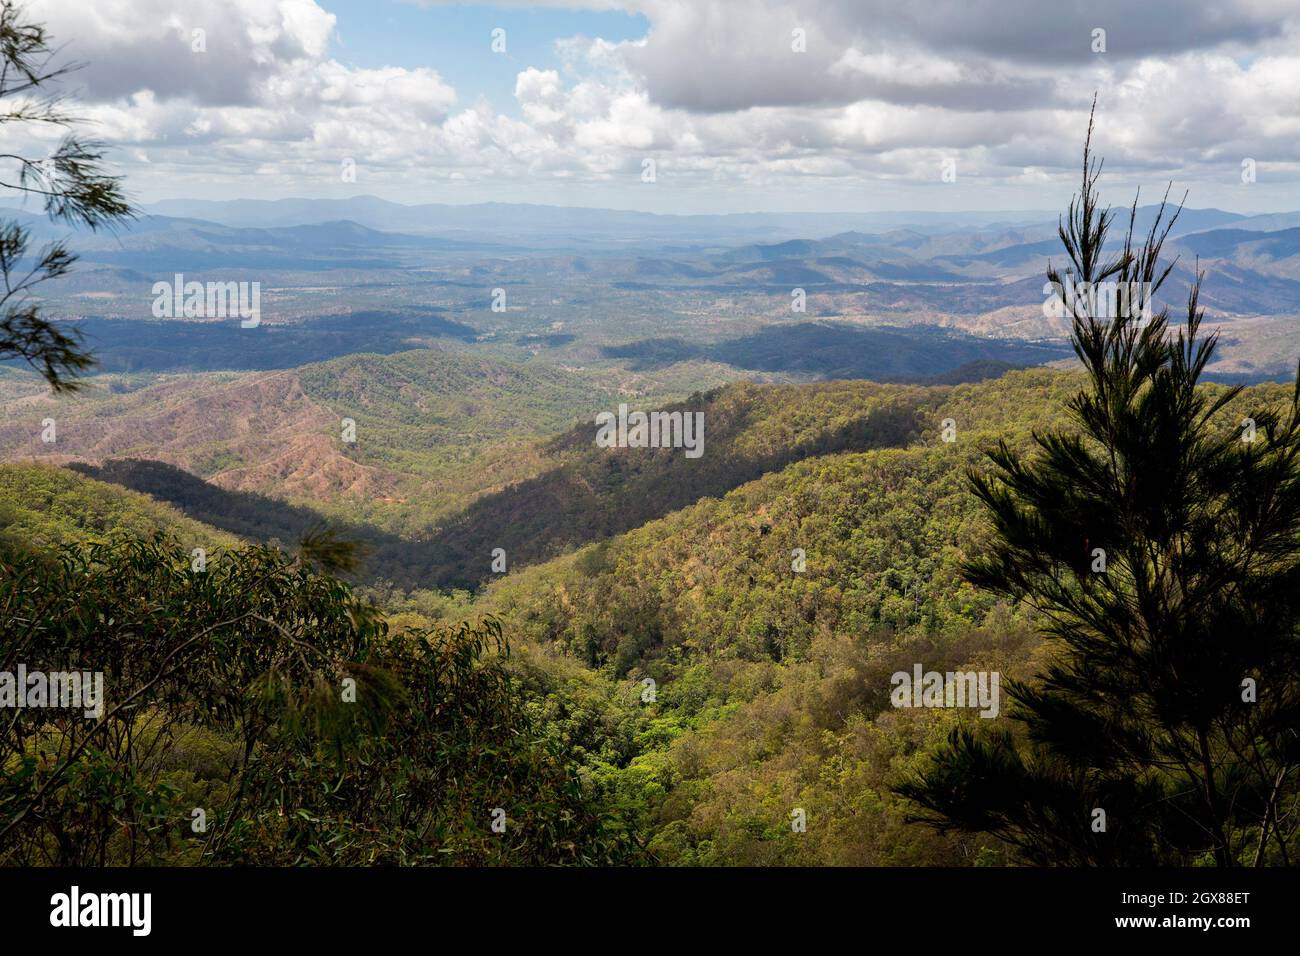 Vista del paisaje boscoso con colinas que se extienden hasta el horizonte en el Parque Nacional Kroombit Tops en la Gran Cordillera Divisoria, Australia Foto de stock